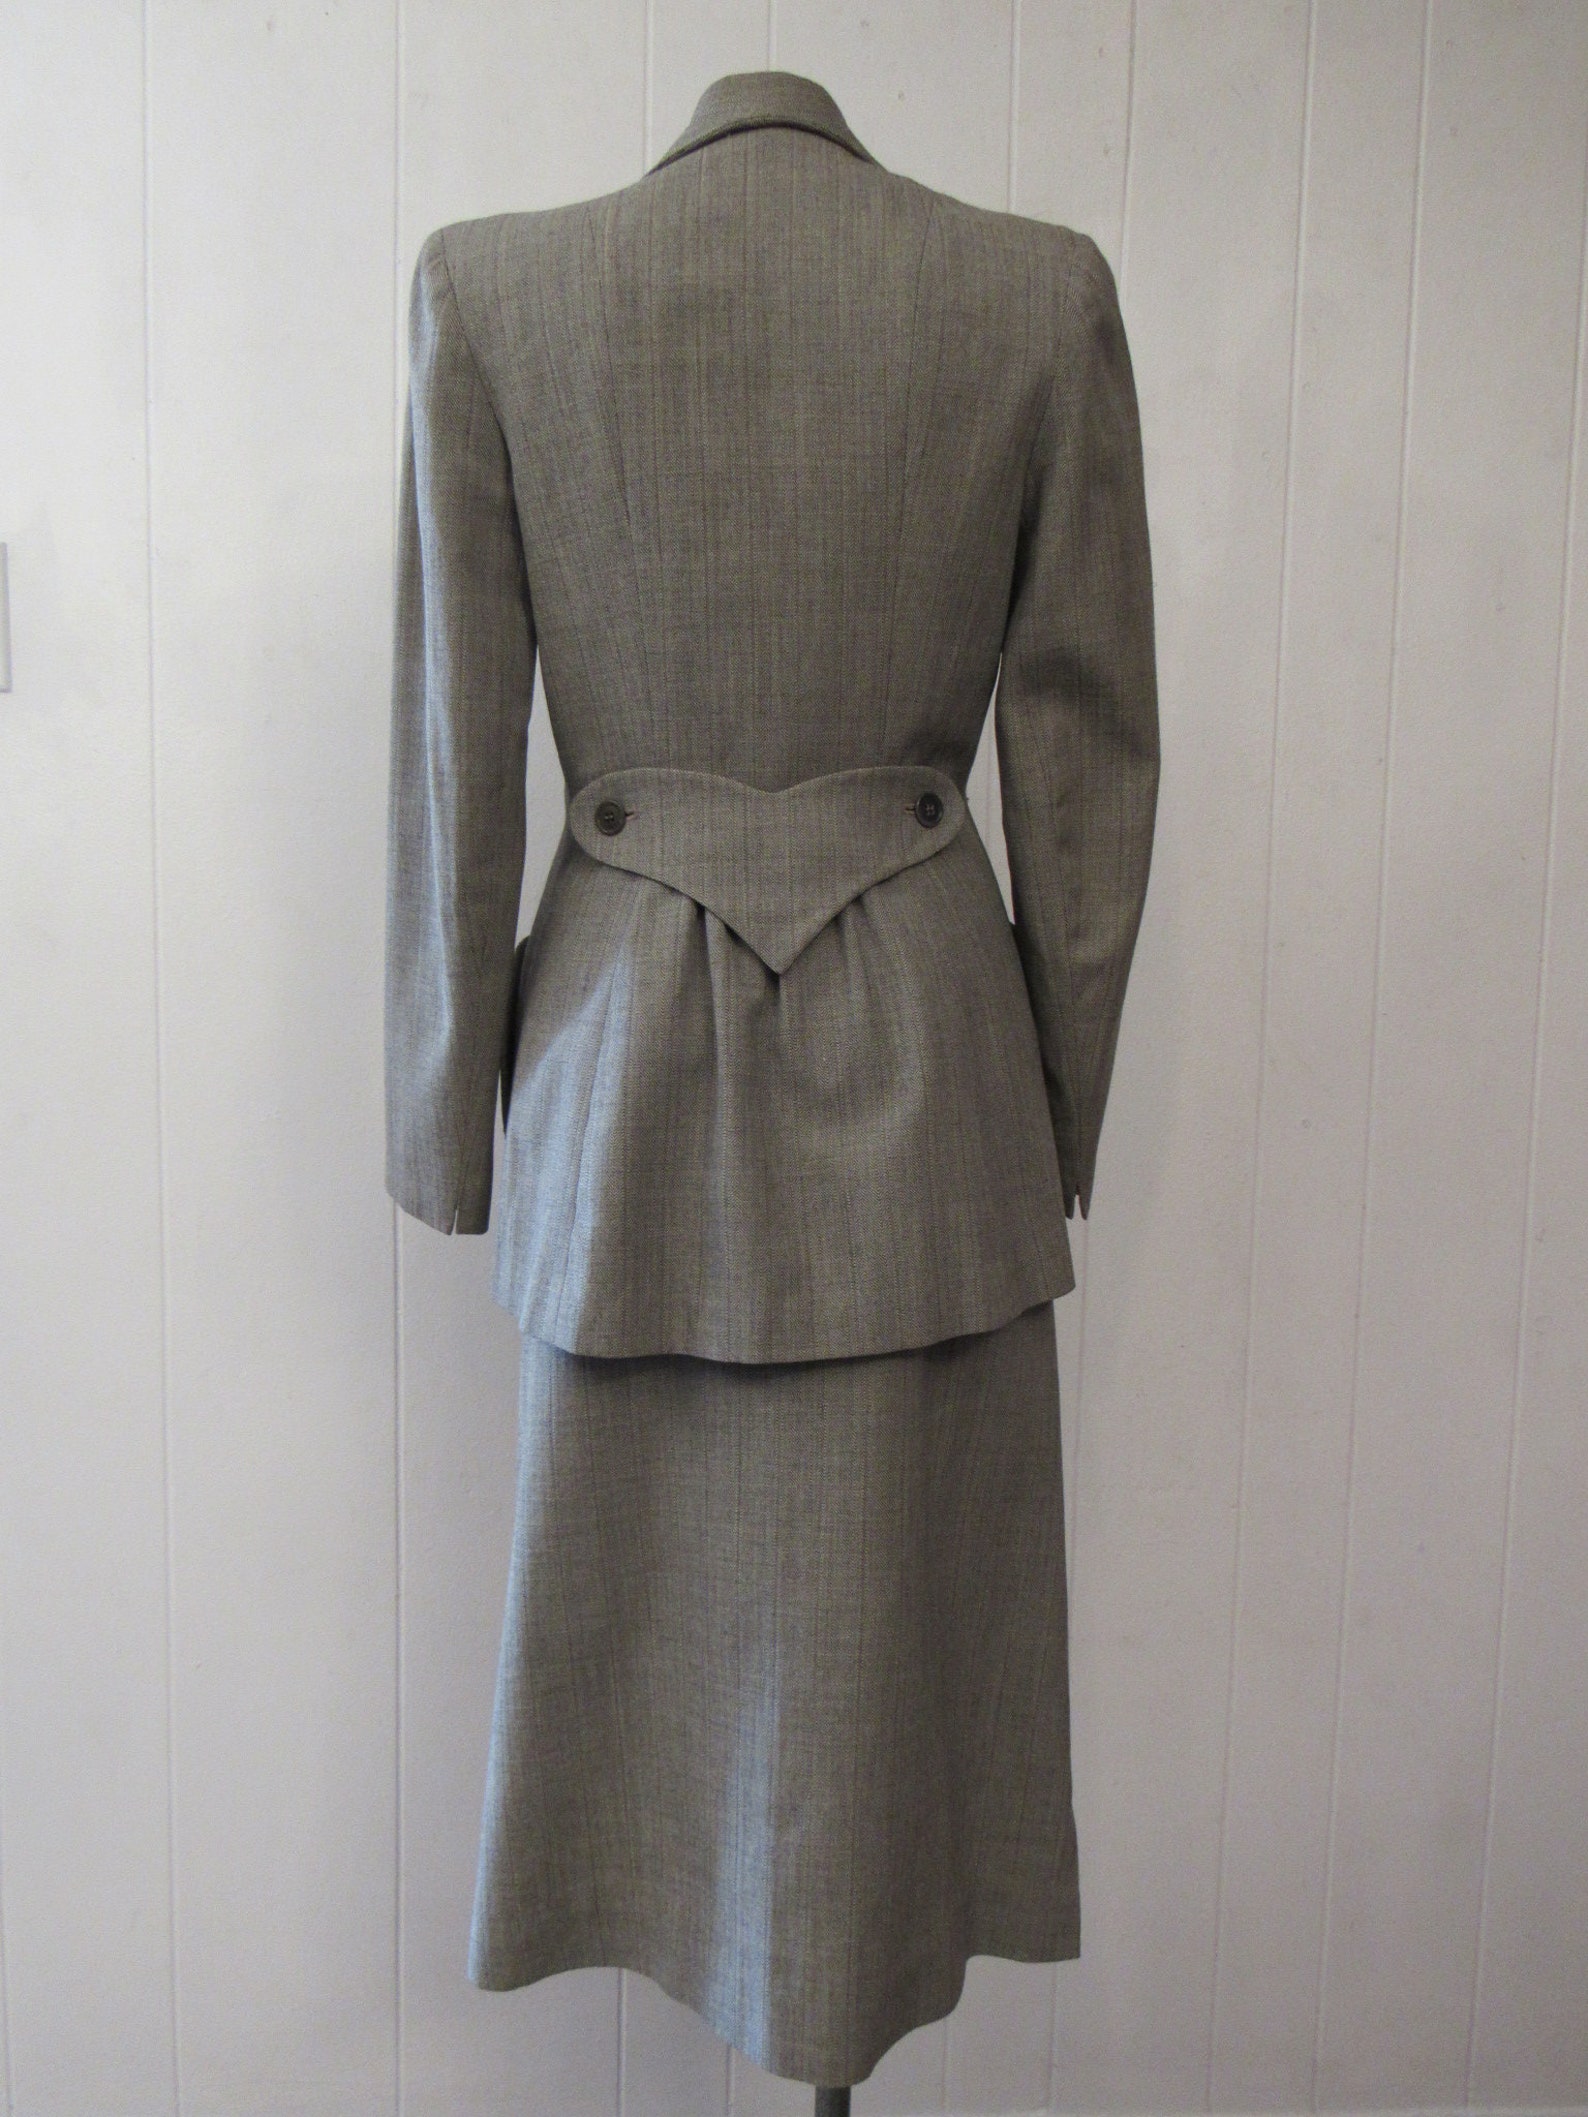 Vintage Suit 1940s Suit Women's Suit Jacket and Skirt | Etsy